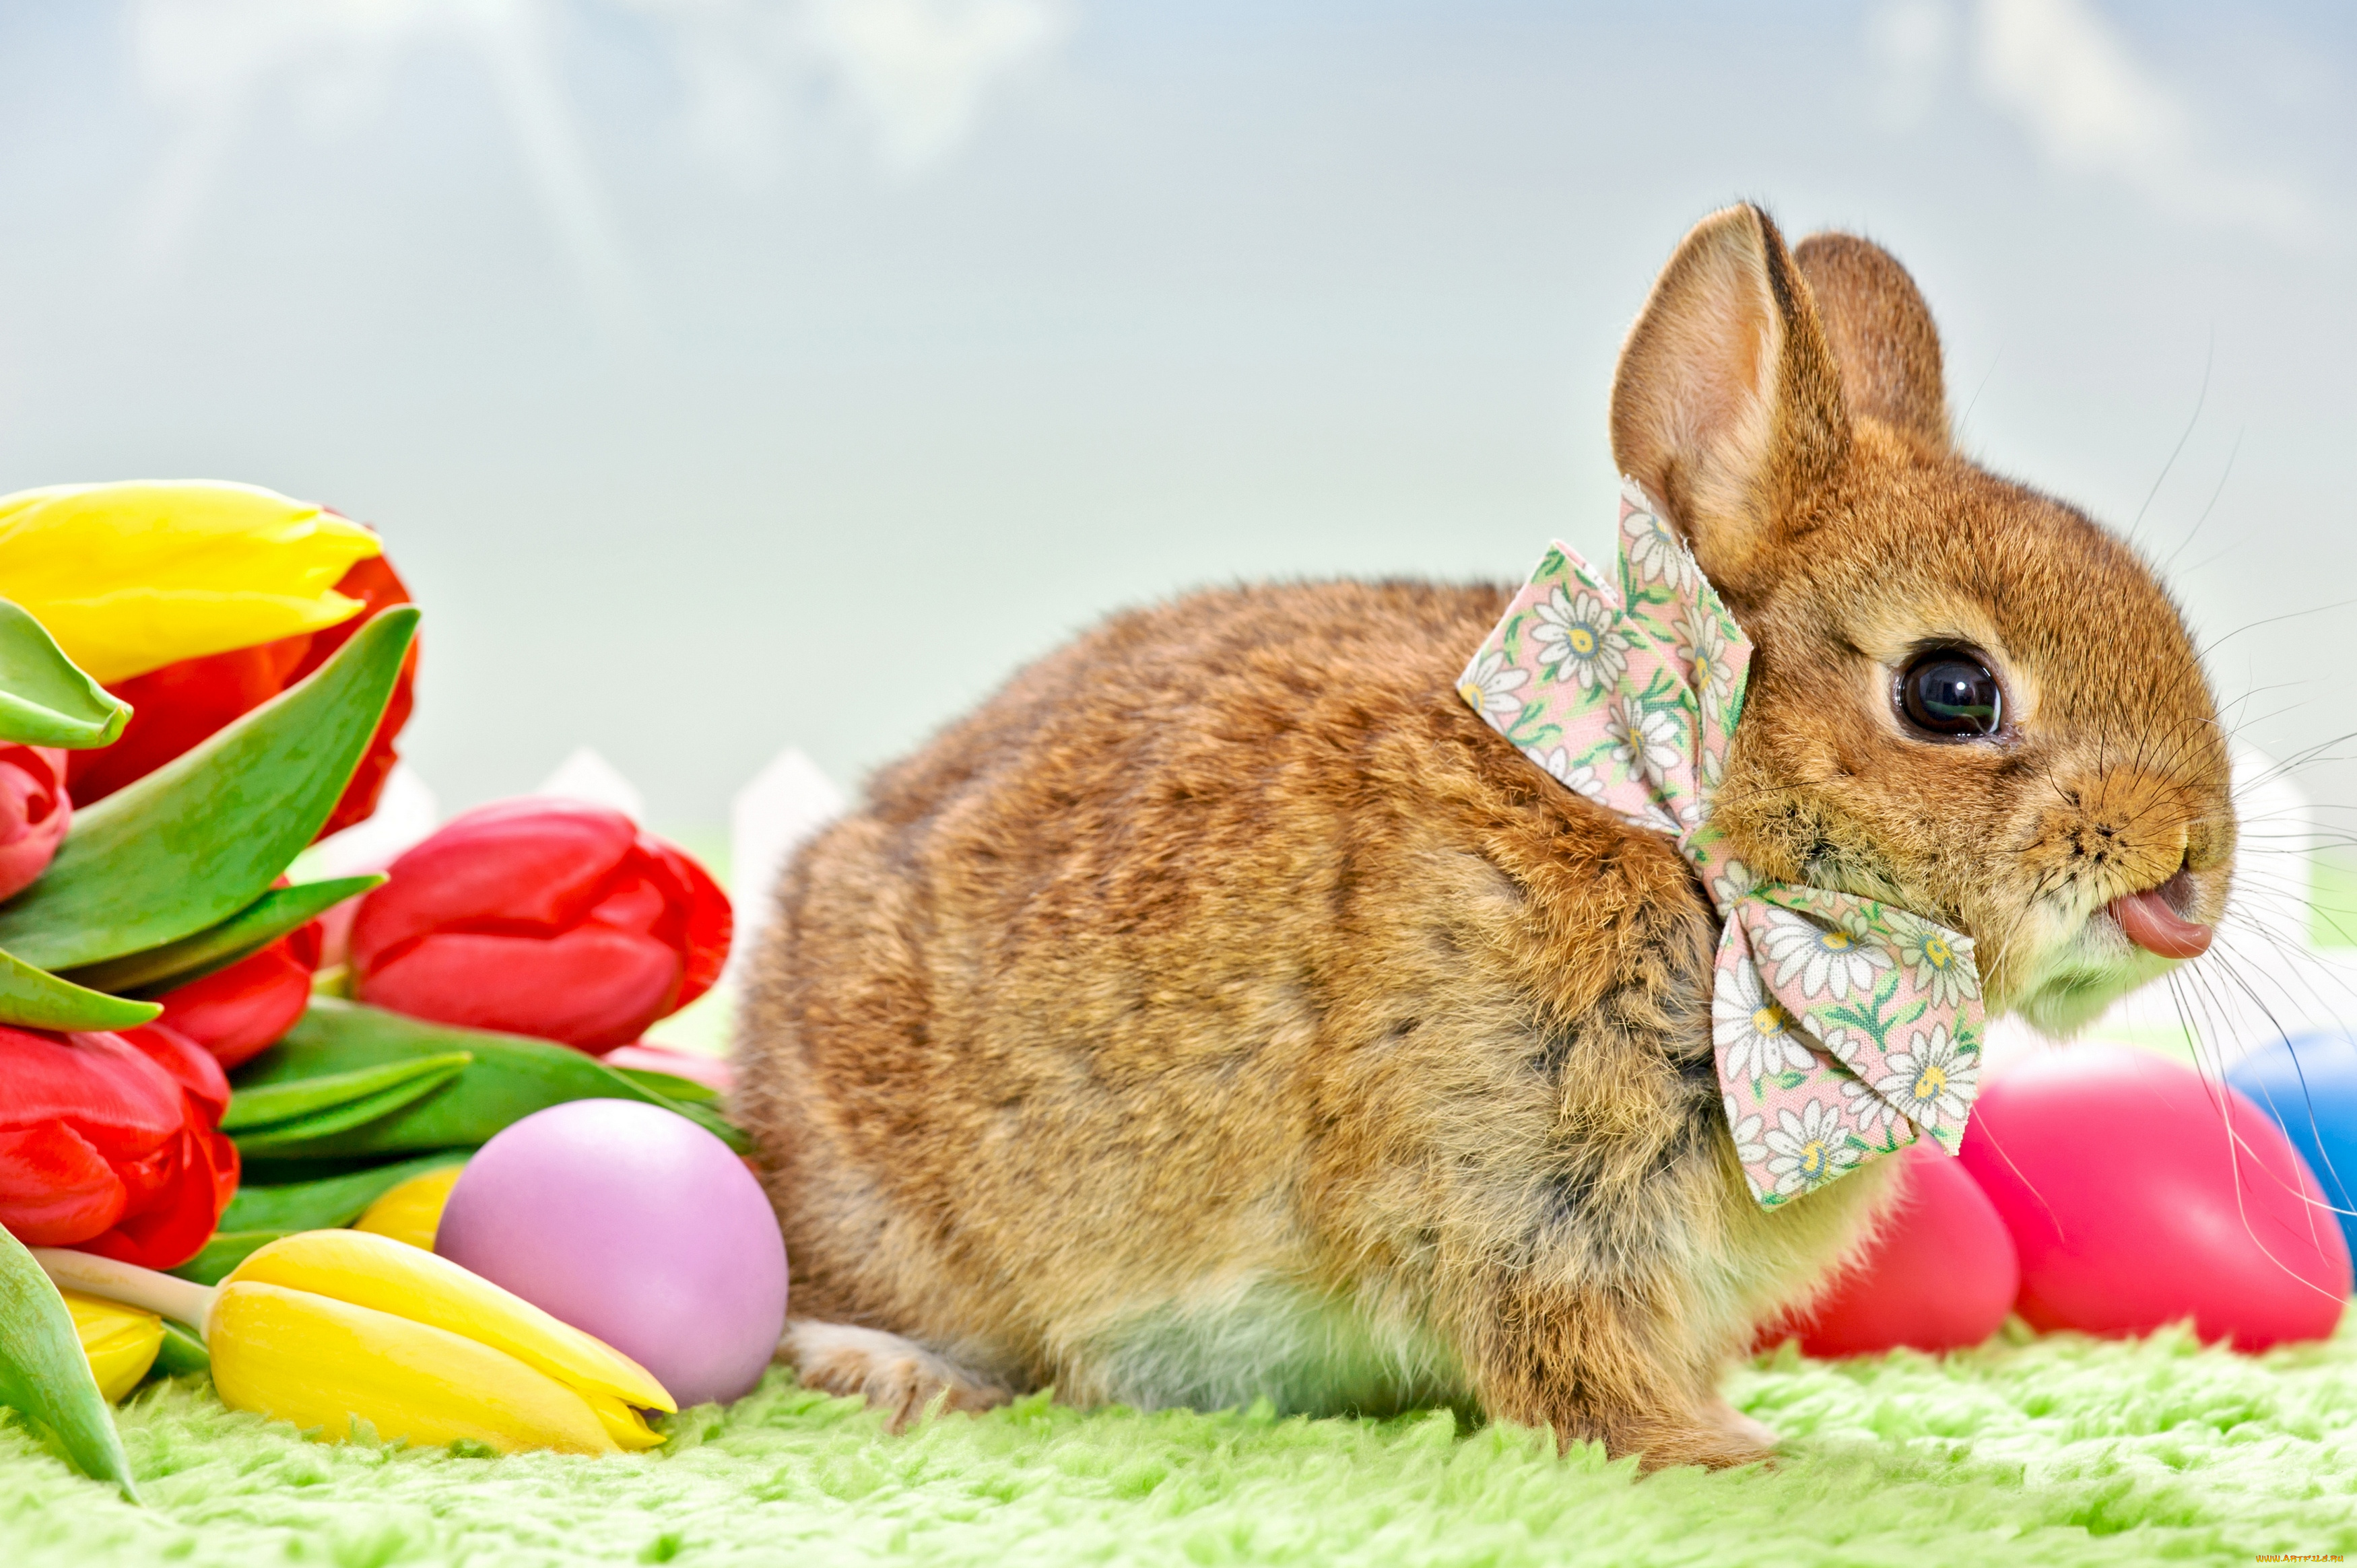 животные, кролики, , зайцы, праздник, пасха, цветы, тюльпаны, кролик, бантик, яички